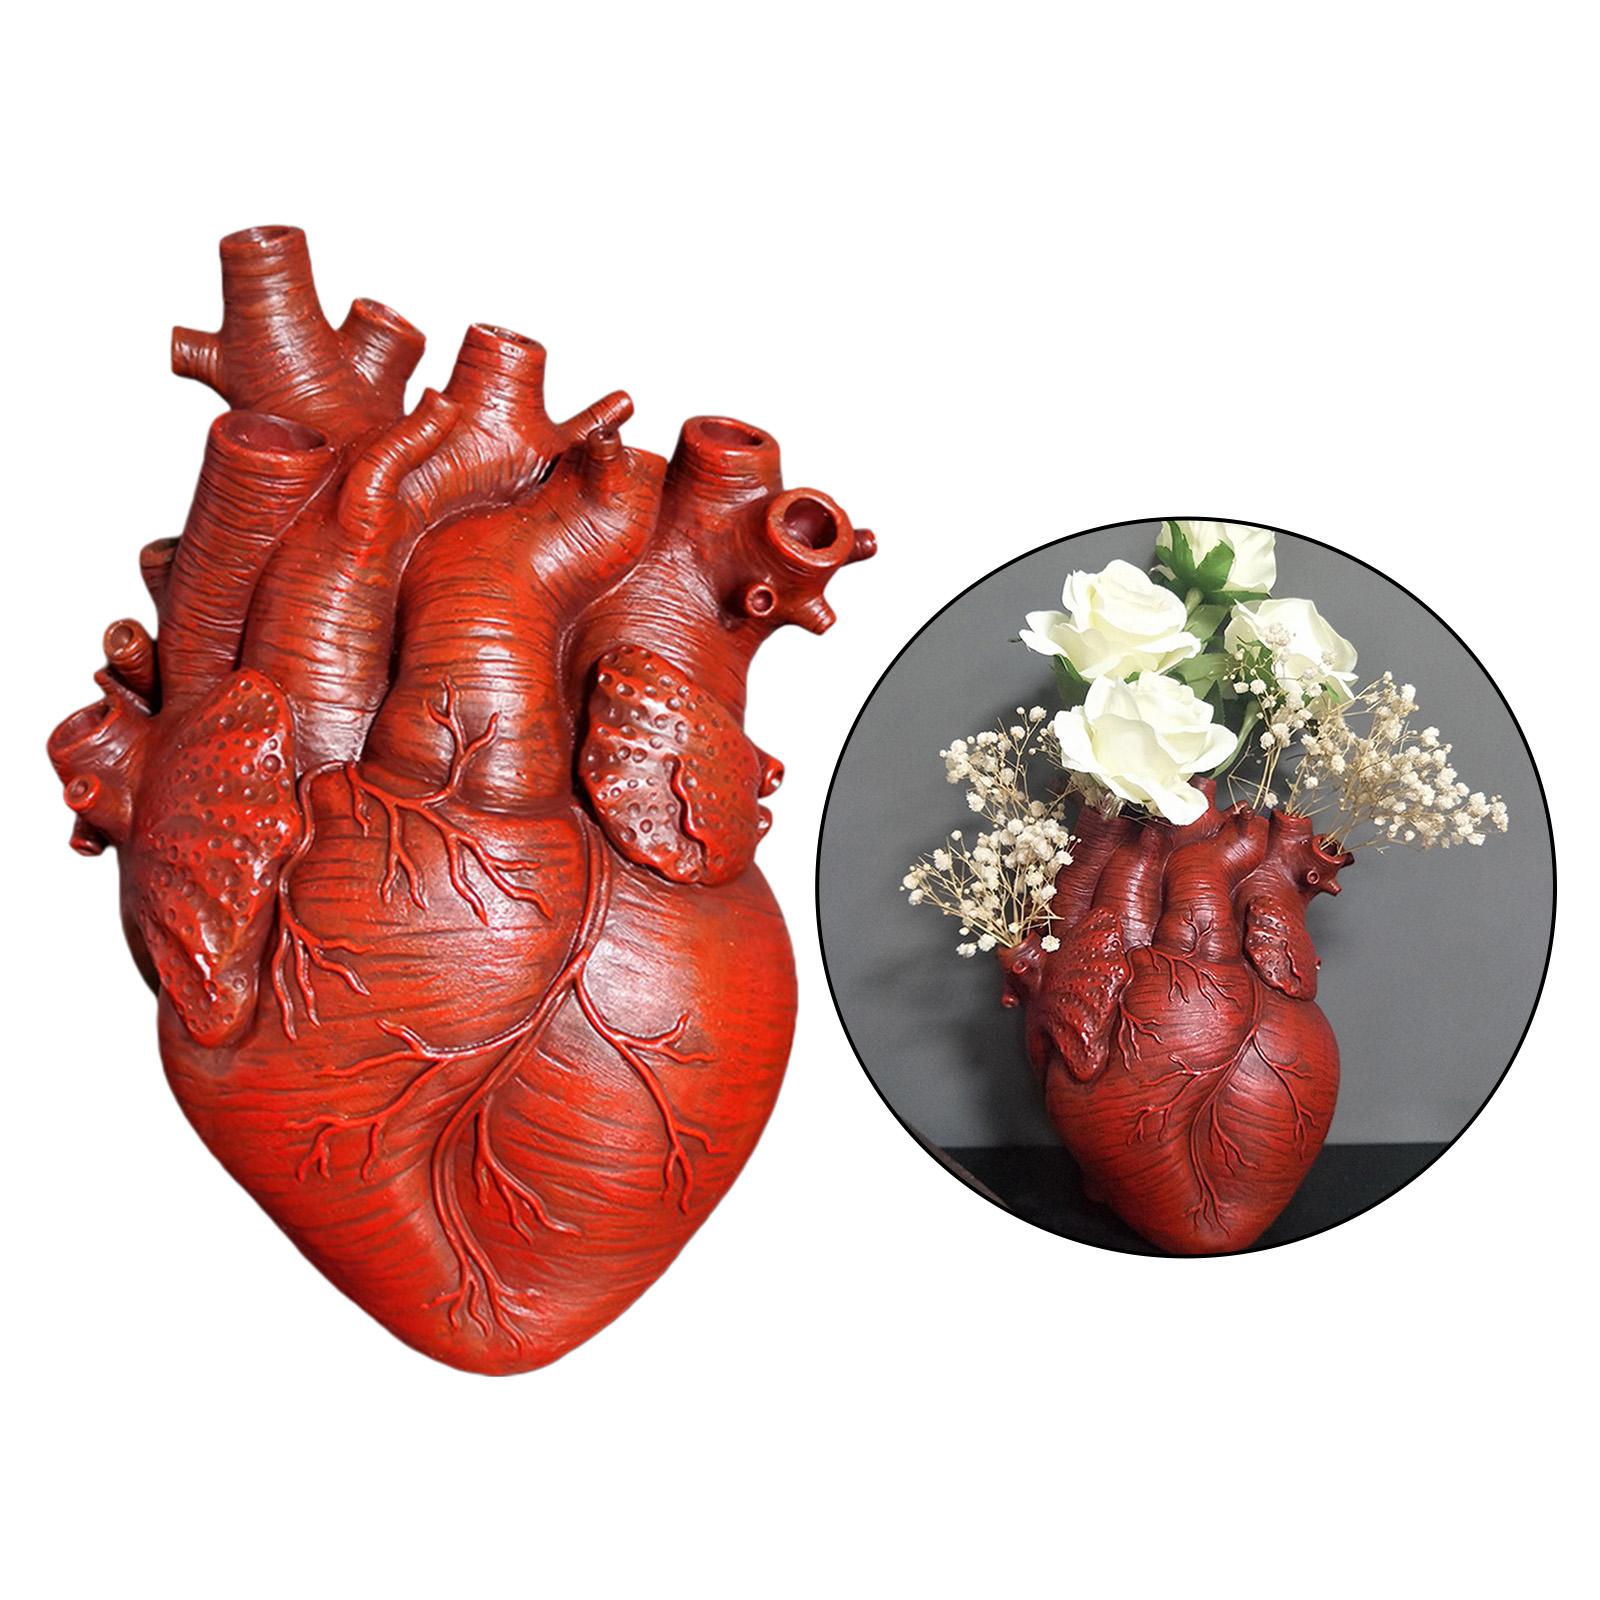 Anatomical Heart Vase Resin Flower Pot Desktop Ornament Home Cabinet Red